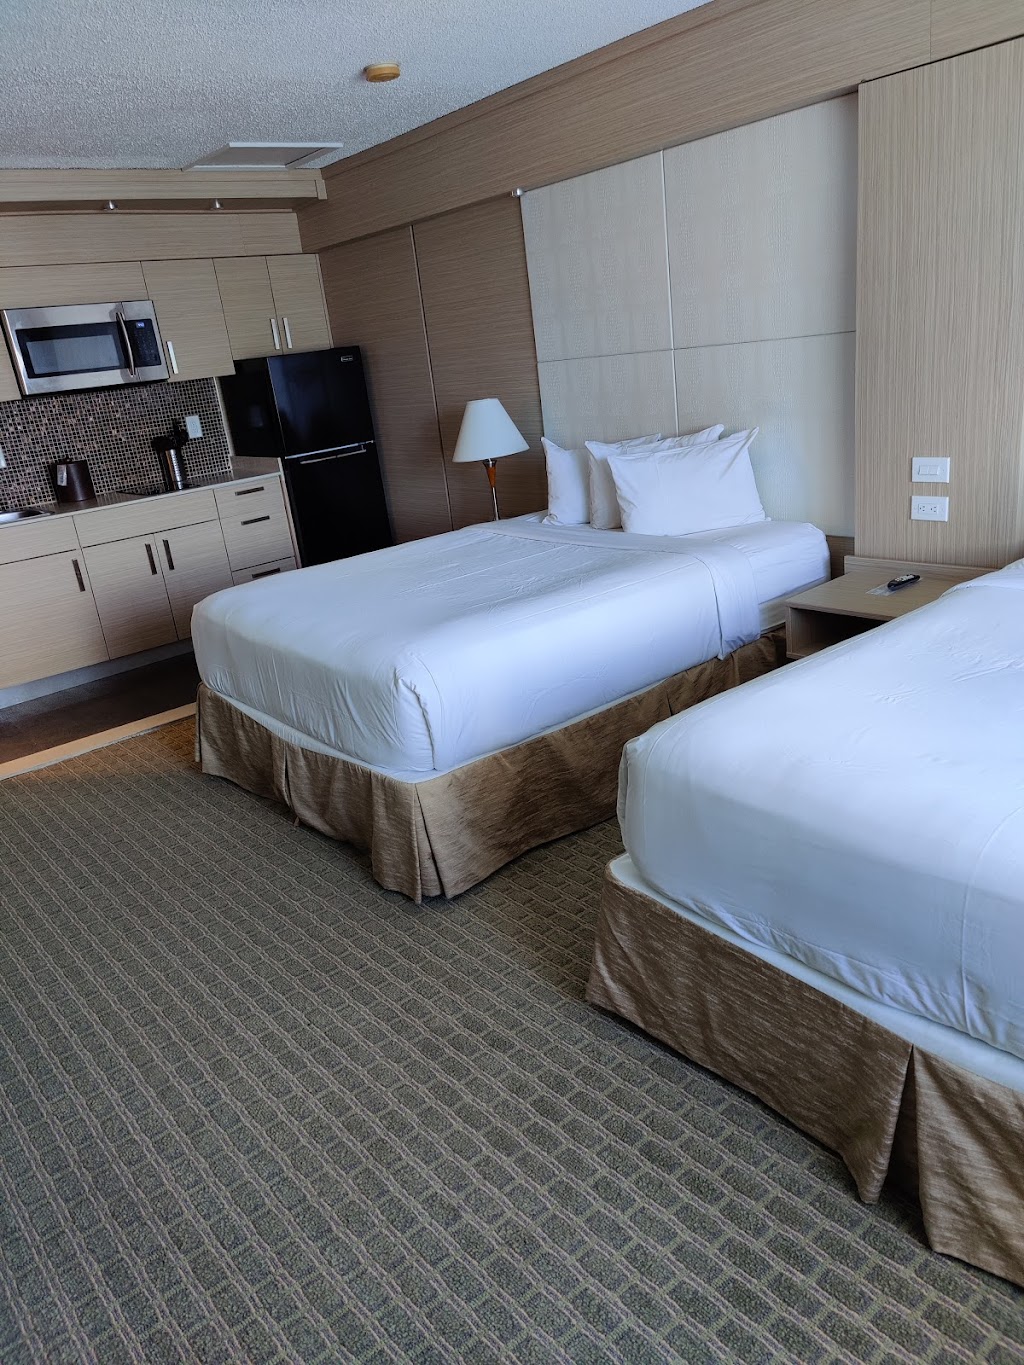 Ocean Beach Palace Hotel and Suites | 4041 N Ocean Blvd, Fort Lauderdale, FL 33308 | Phone: (954) 565-9224